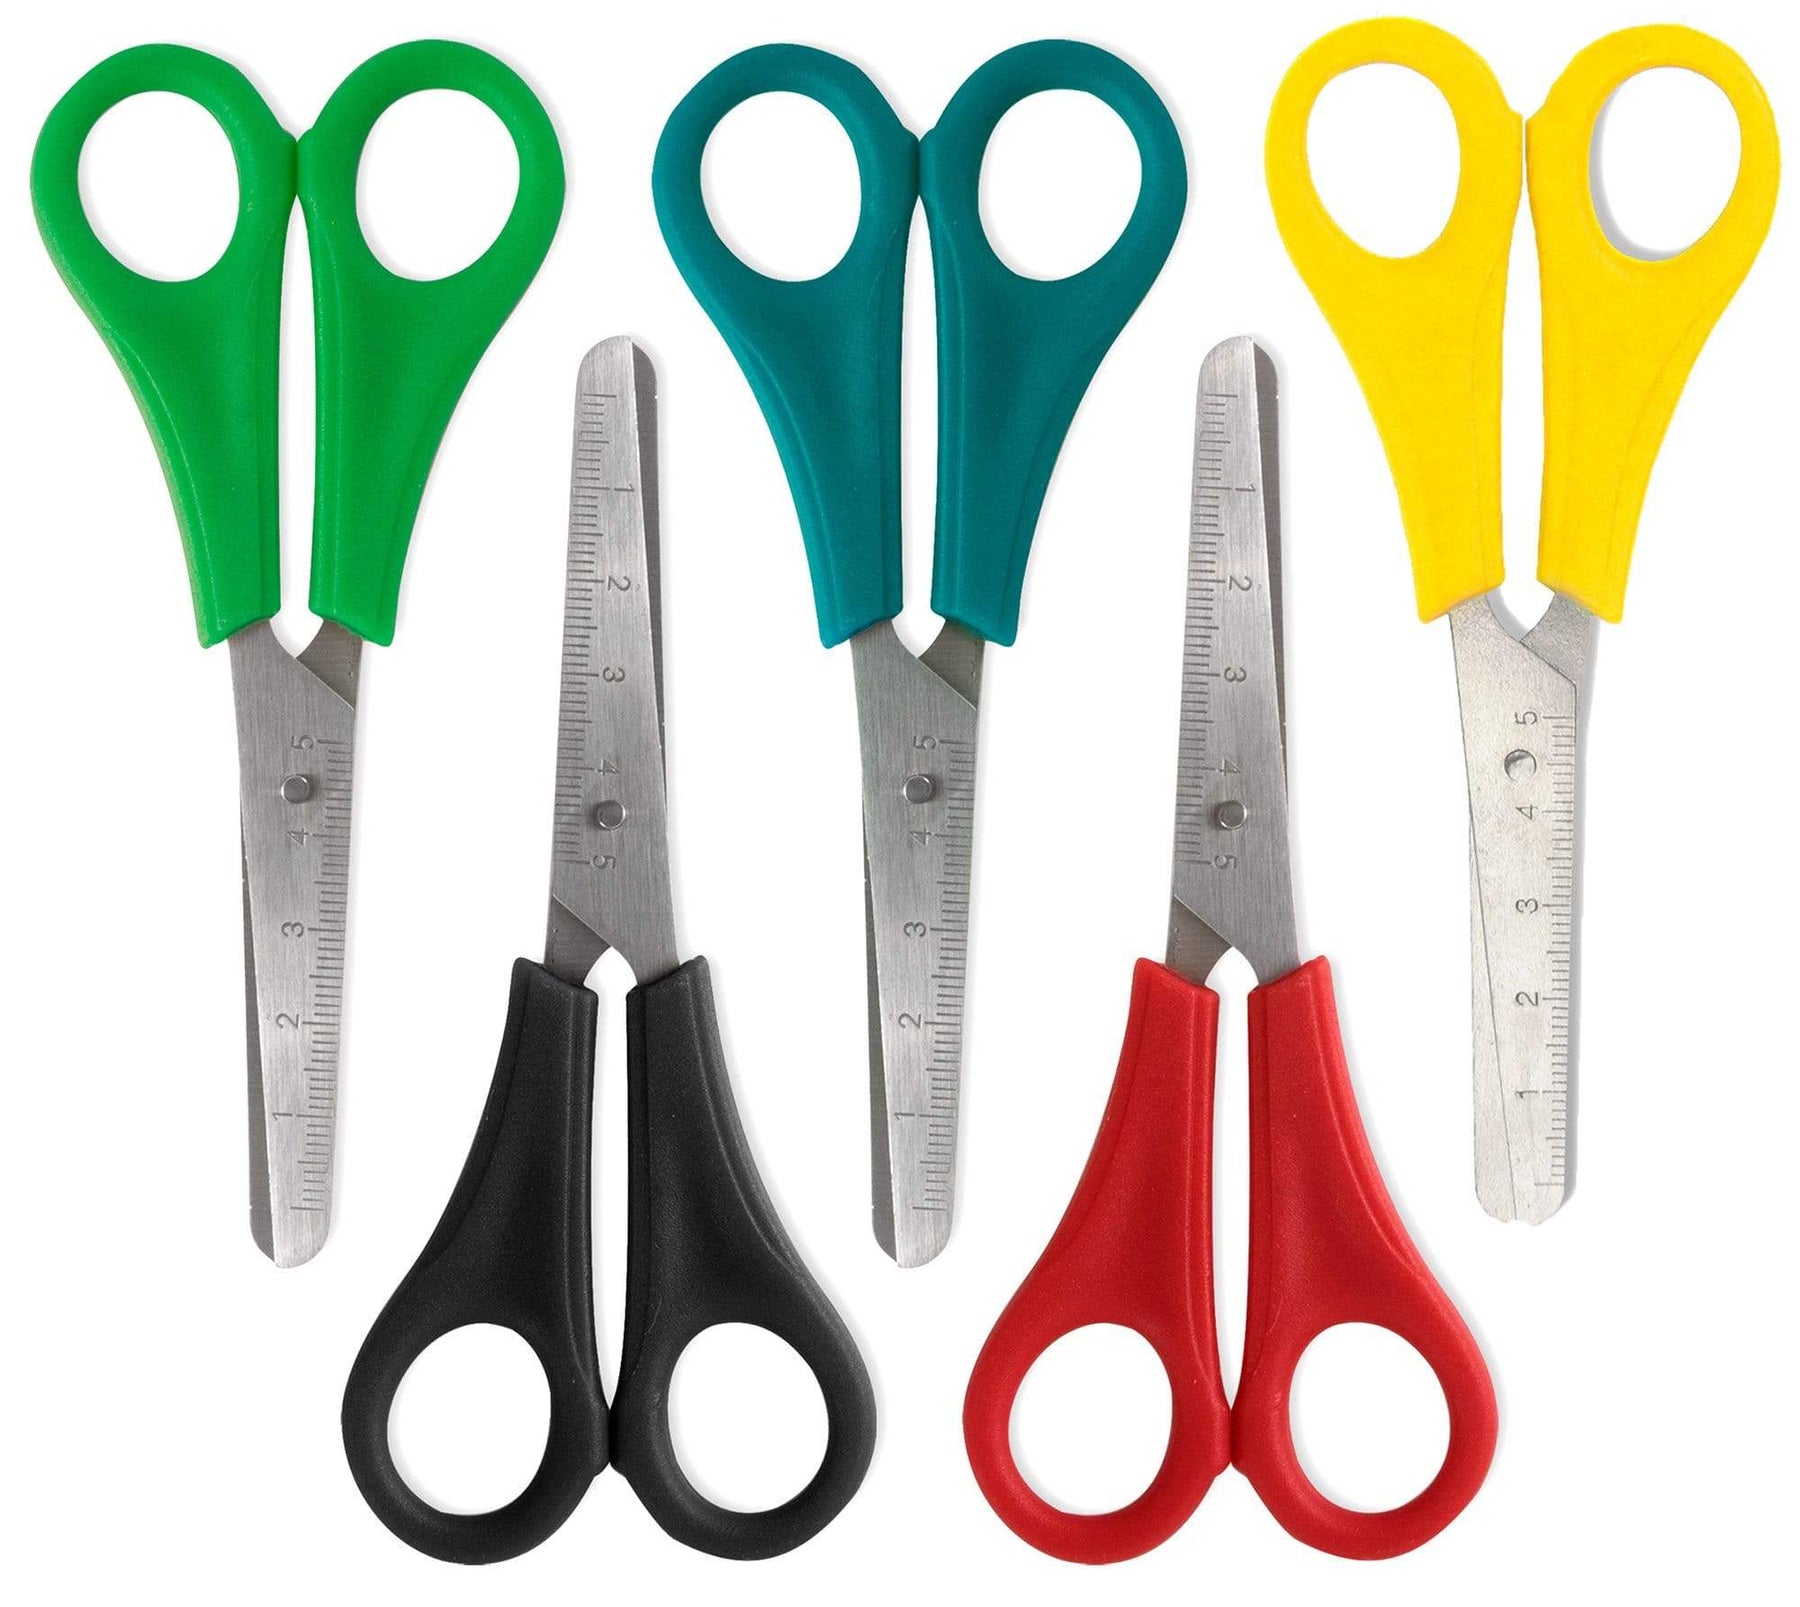 Wholesale 5 Inch Scissor Blunt Tip - Assorted Colors